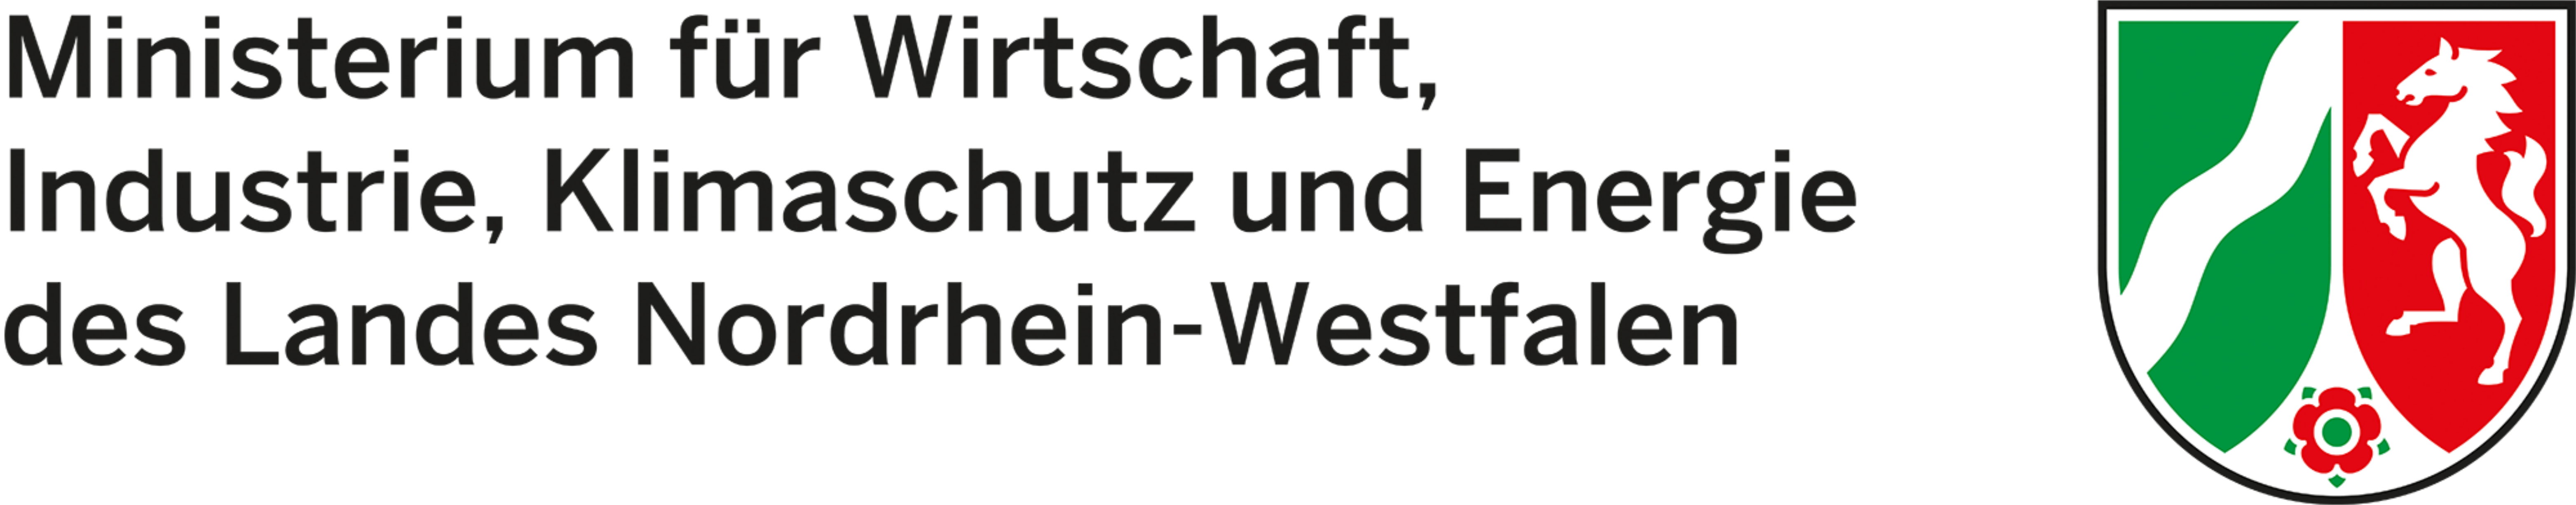 Logo - Ministerium für Wirtschaft, Industrie, Klimaschutz und Energie des Landes Nordrhein-Westfalen